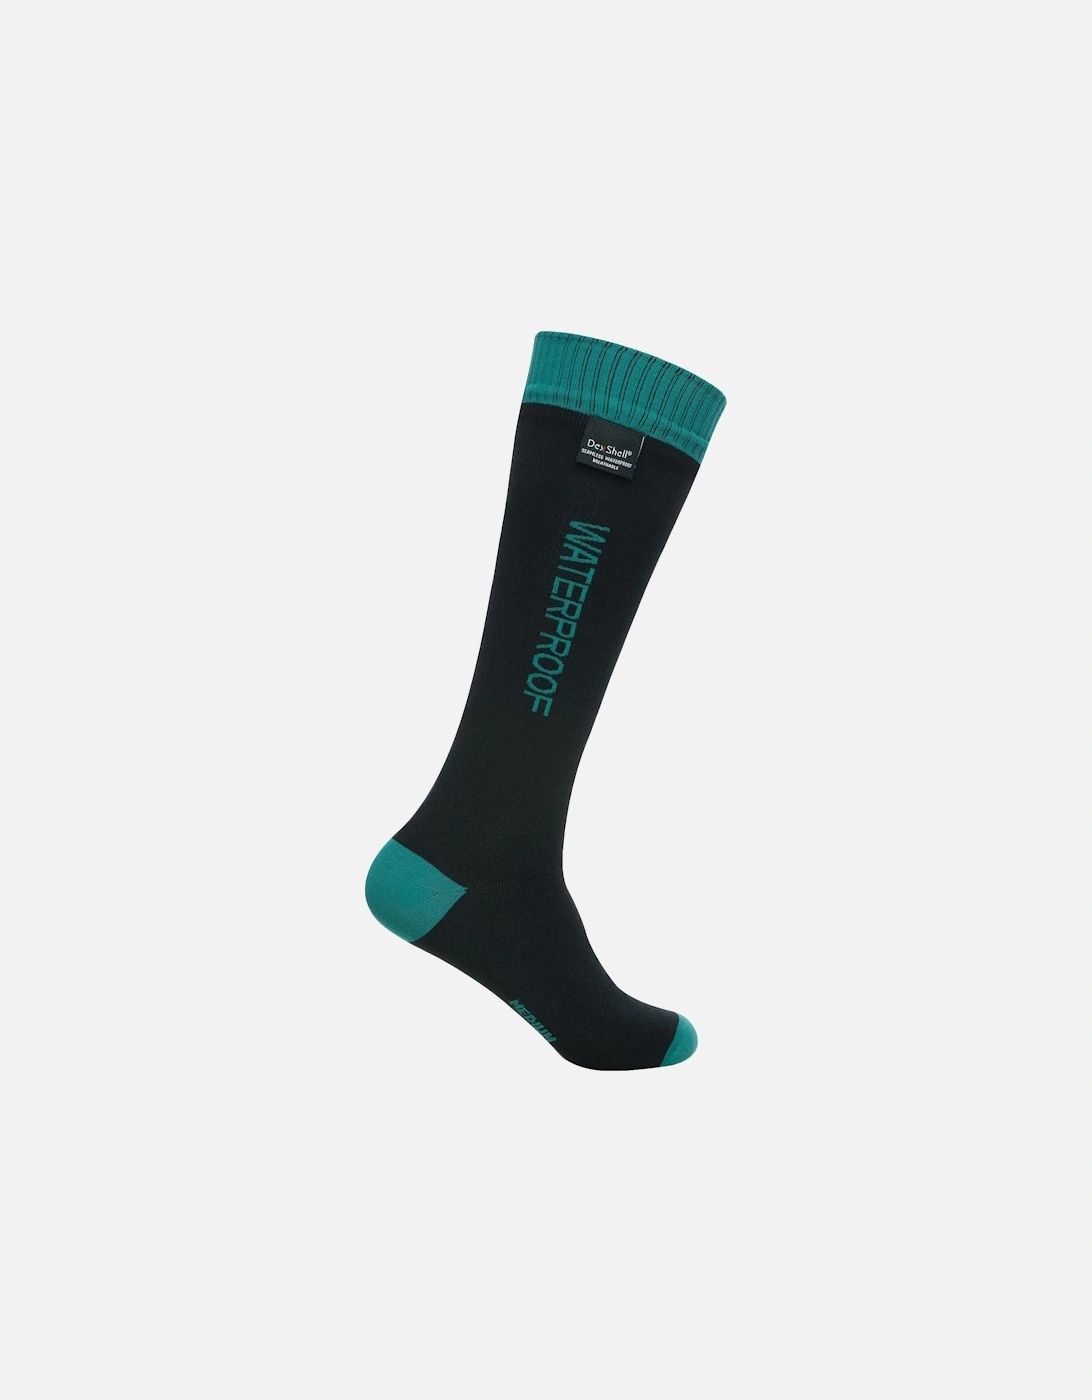 Wading Knee Length Waterproof Socks - Black, 2 of 1